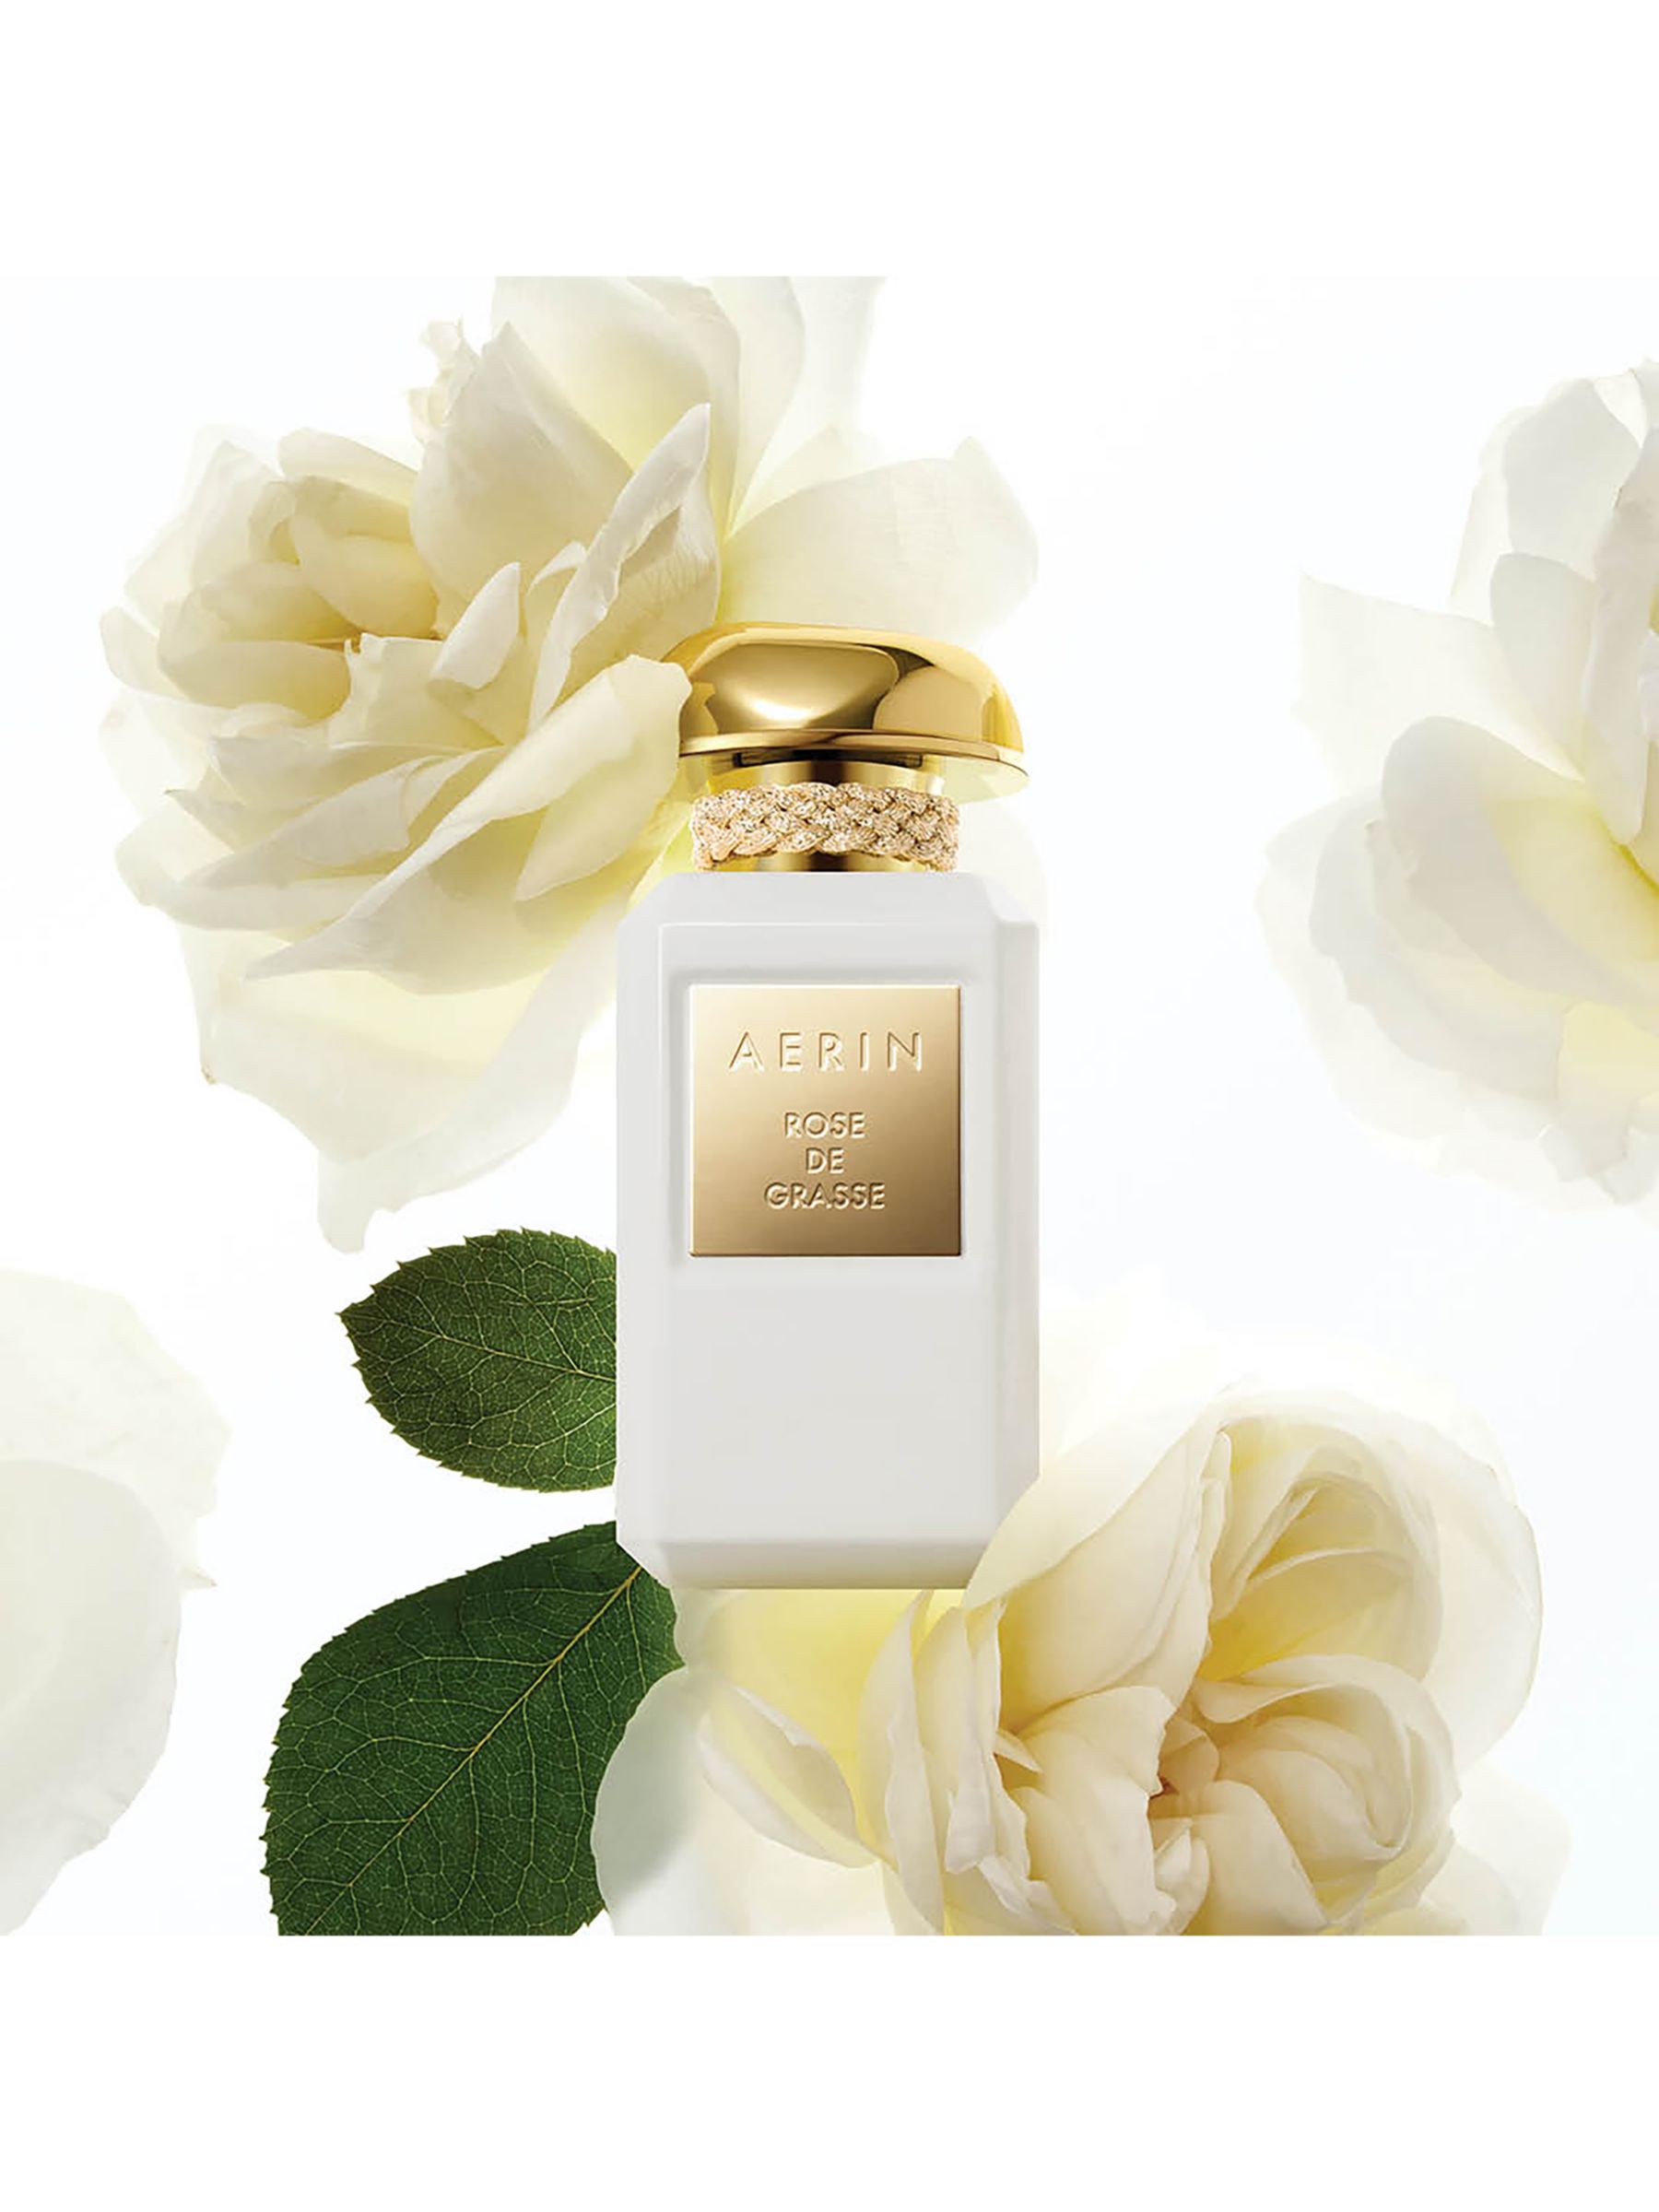 AERIN Rose de Grasse Parfum, 100ml 2